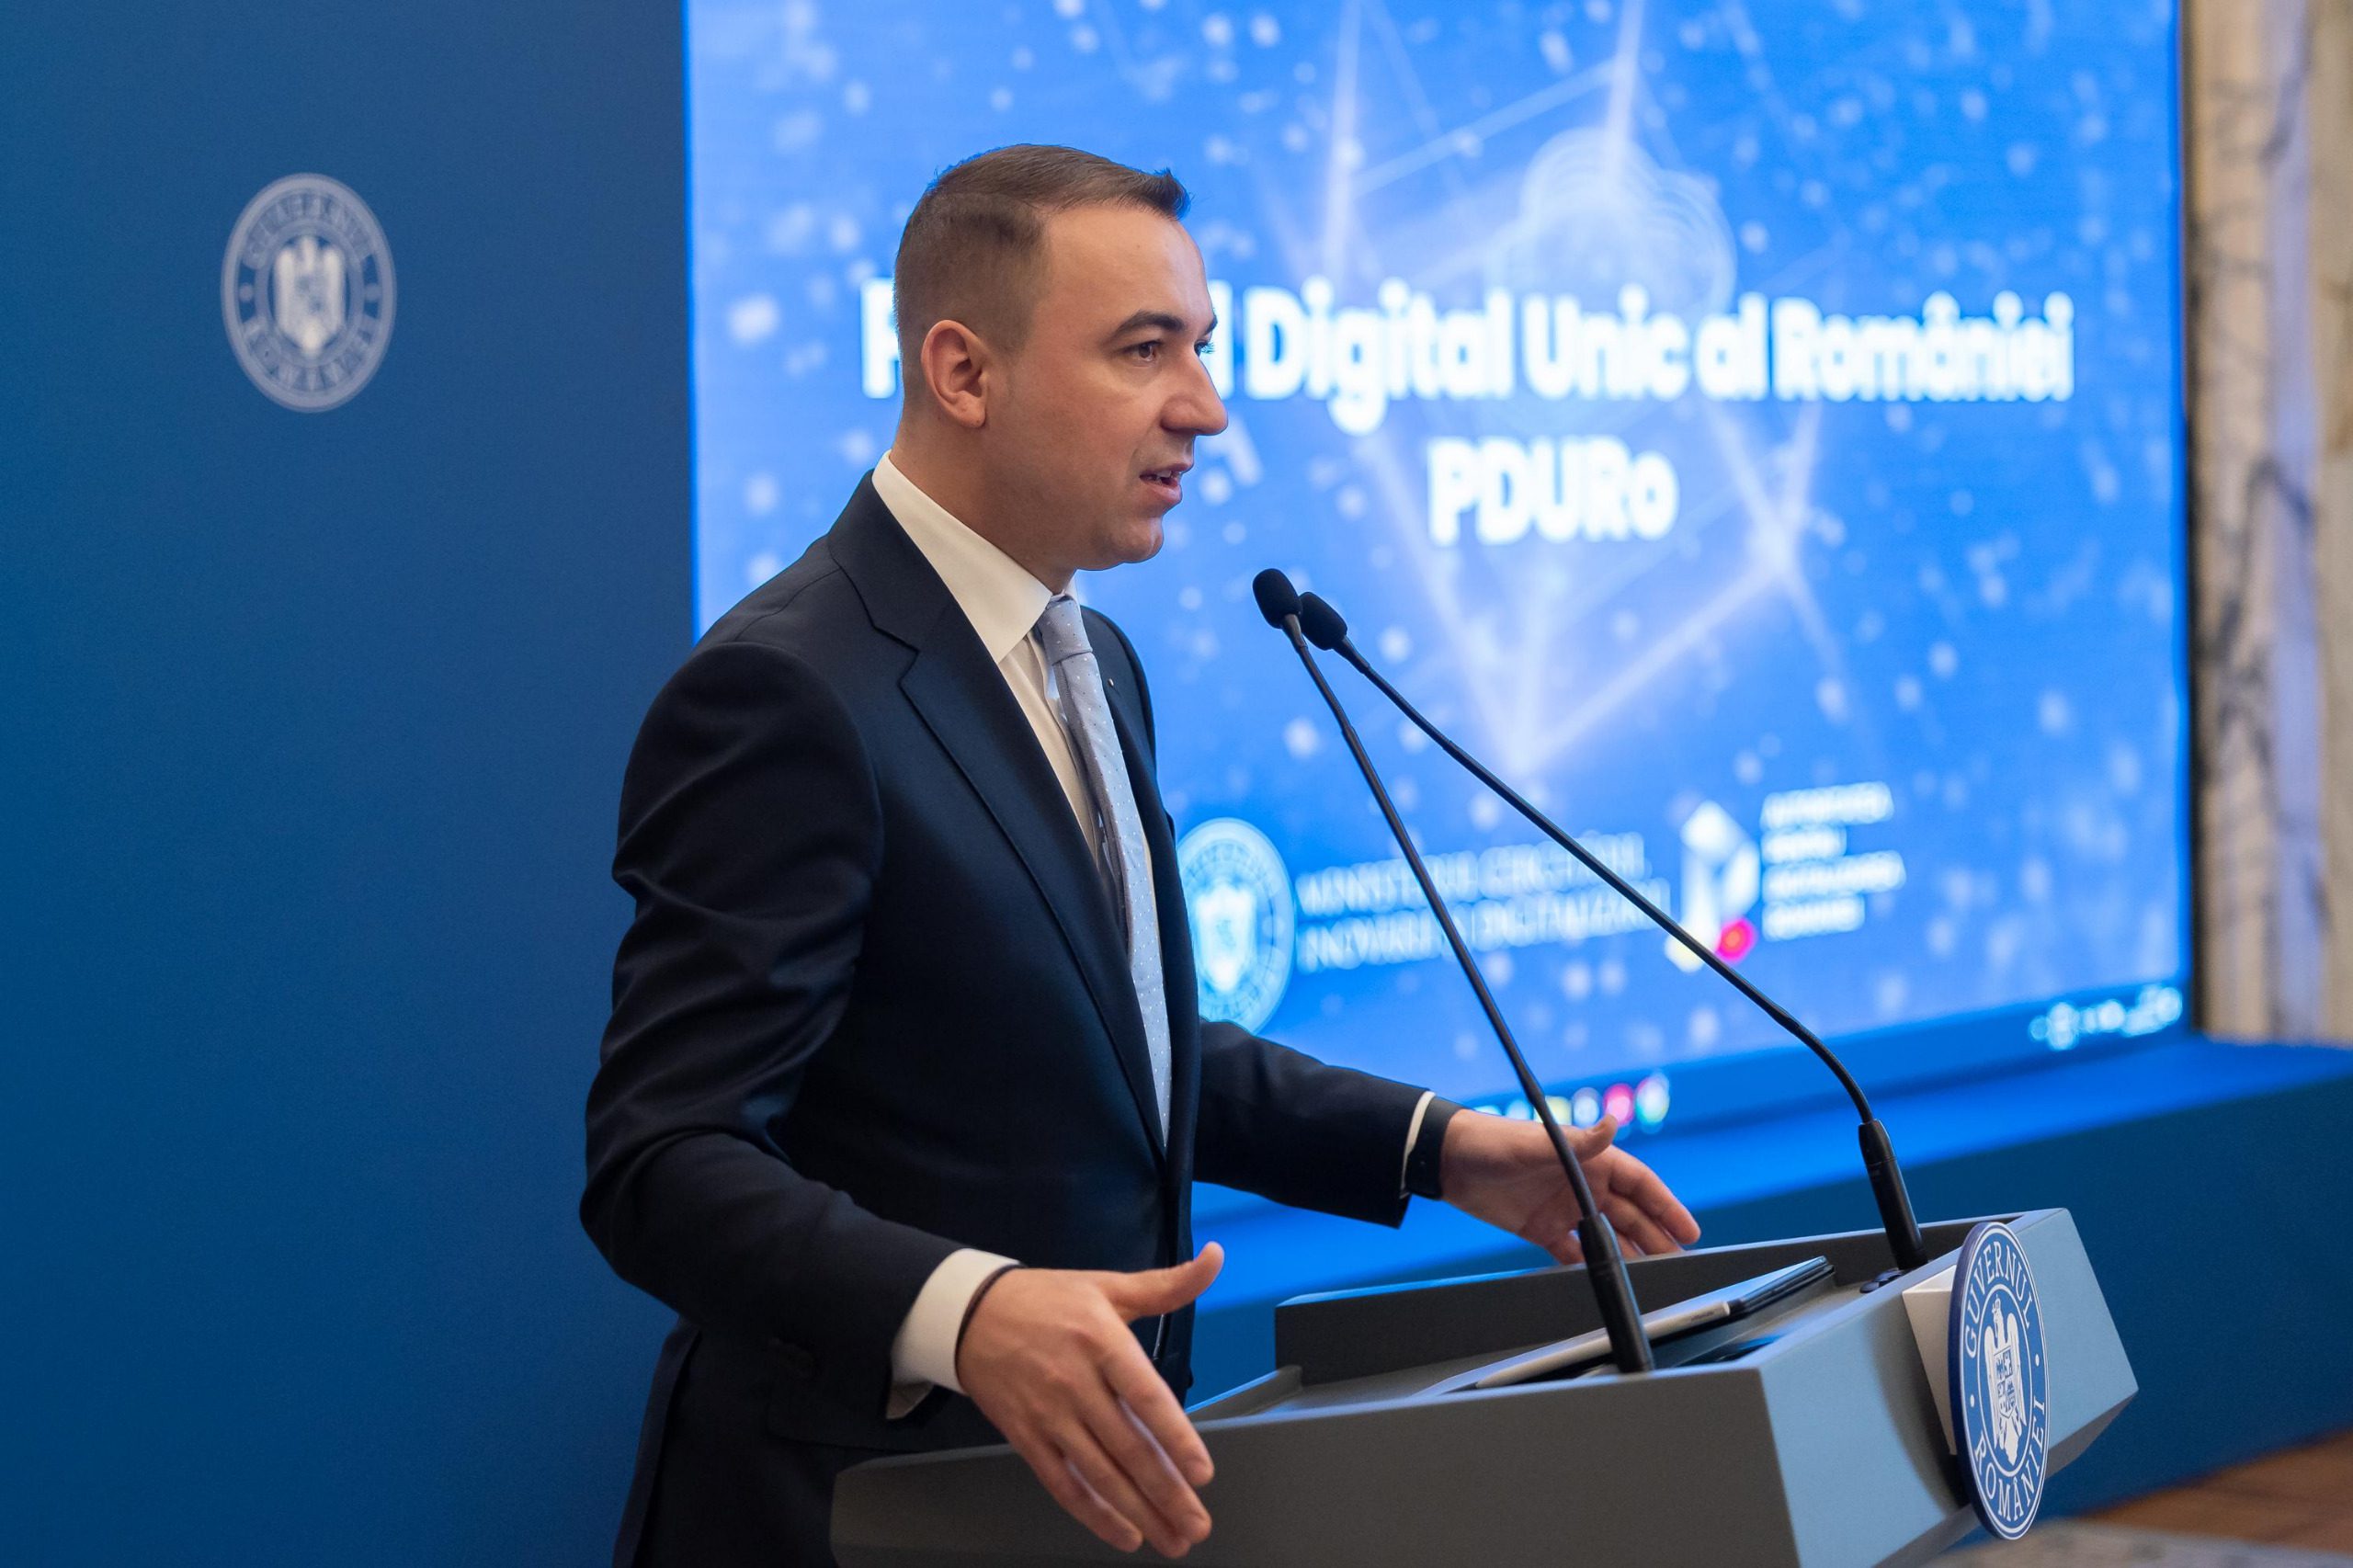 Un singur punct de contact pentru toate instituțiile publice – astăzi a fost semnat contractul de implementare pentru Portalul Digital Unic al României (PDURo)